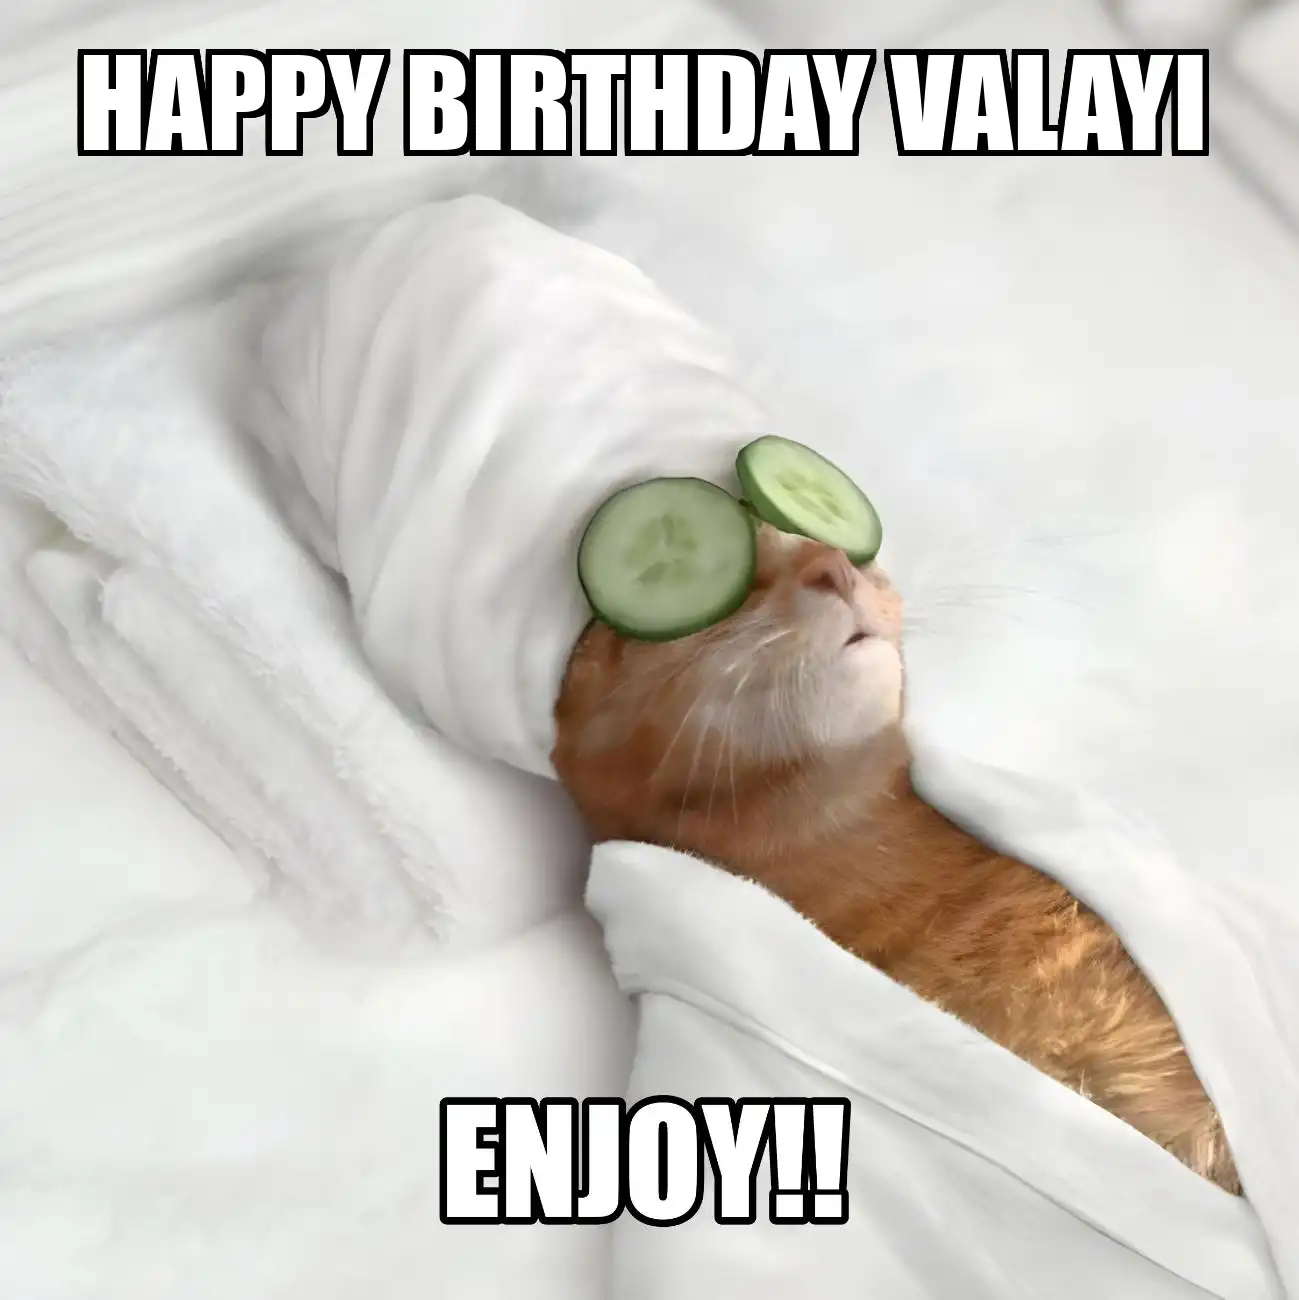 Happy Birthday Valayi Enjoy Cat Meme